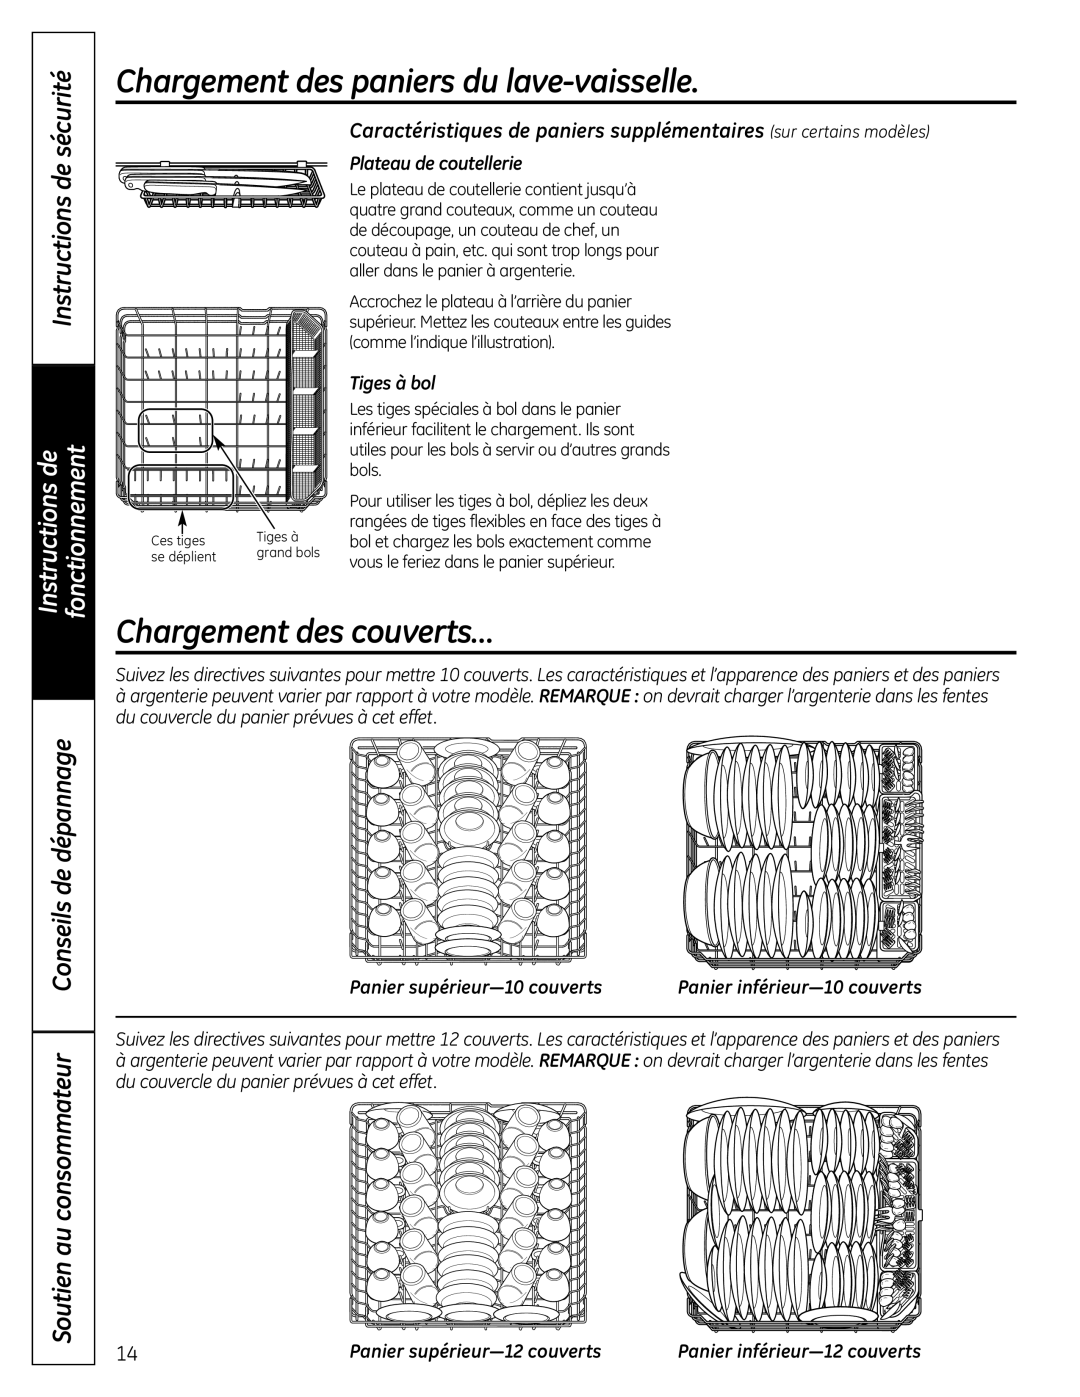 GE PDW8000 manual Chargement des paniers du lave-vaisselle, Chargement des couverts…, Plateau de coutellerie, Tiges à bol 